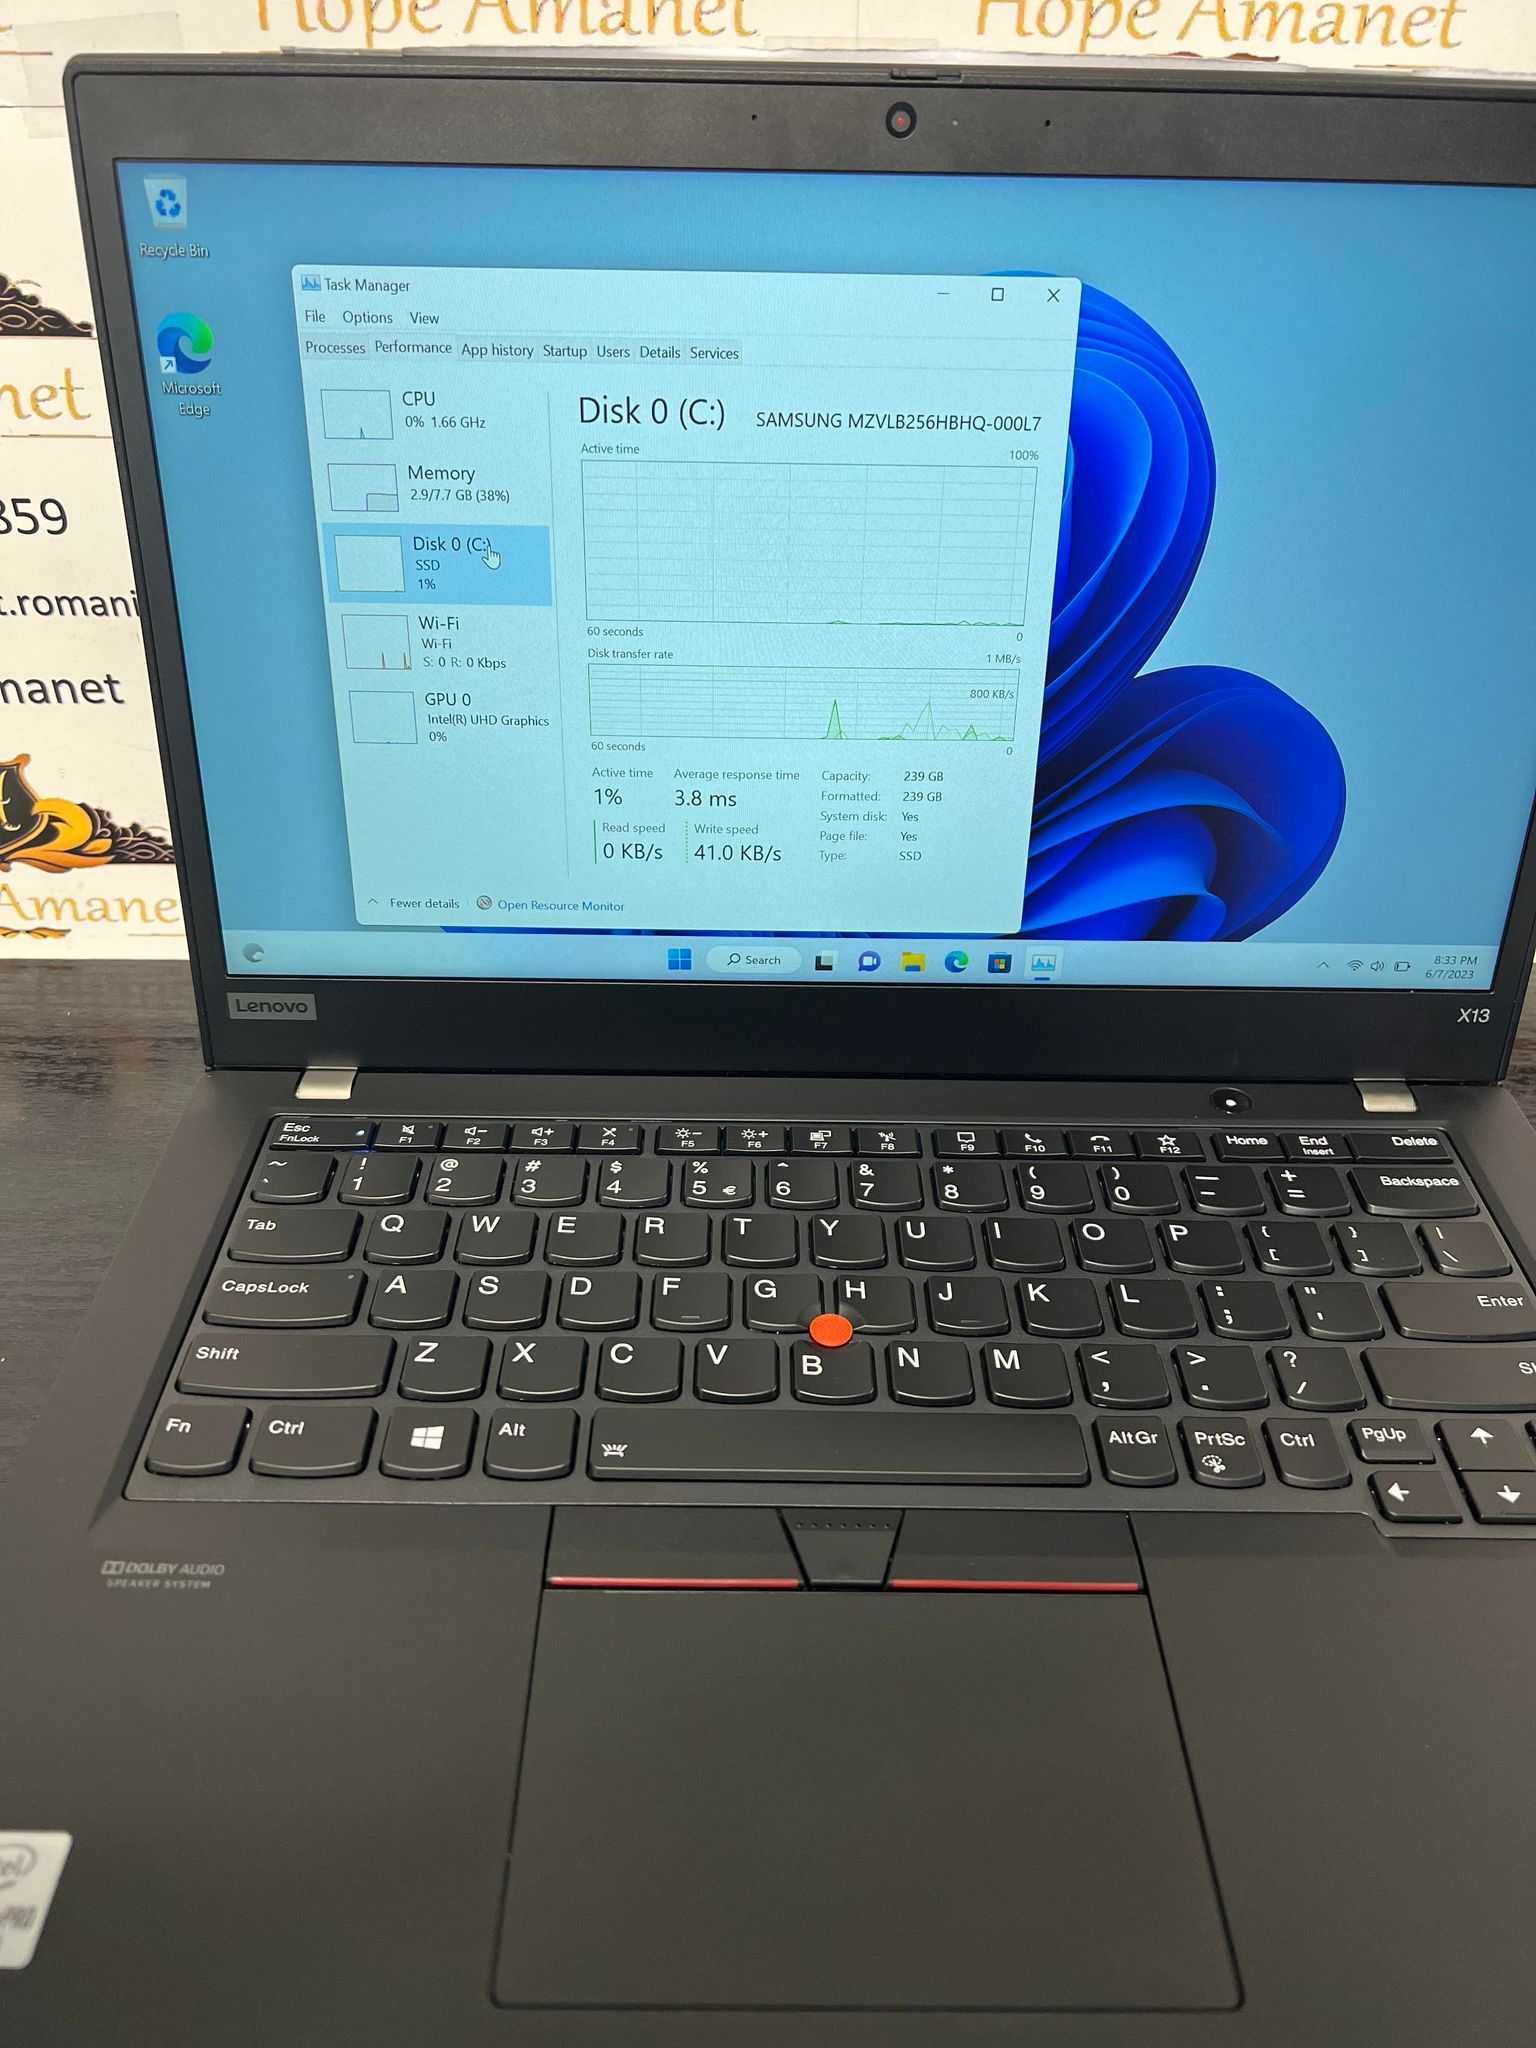 Hope Amanet P10/Laptop Lenovo ThinkPad X13,gen 1 ,i5Vpro-10310U